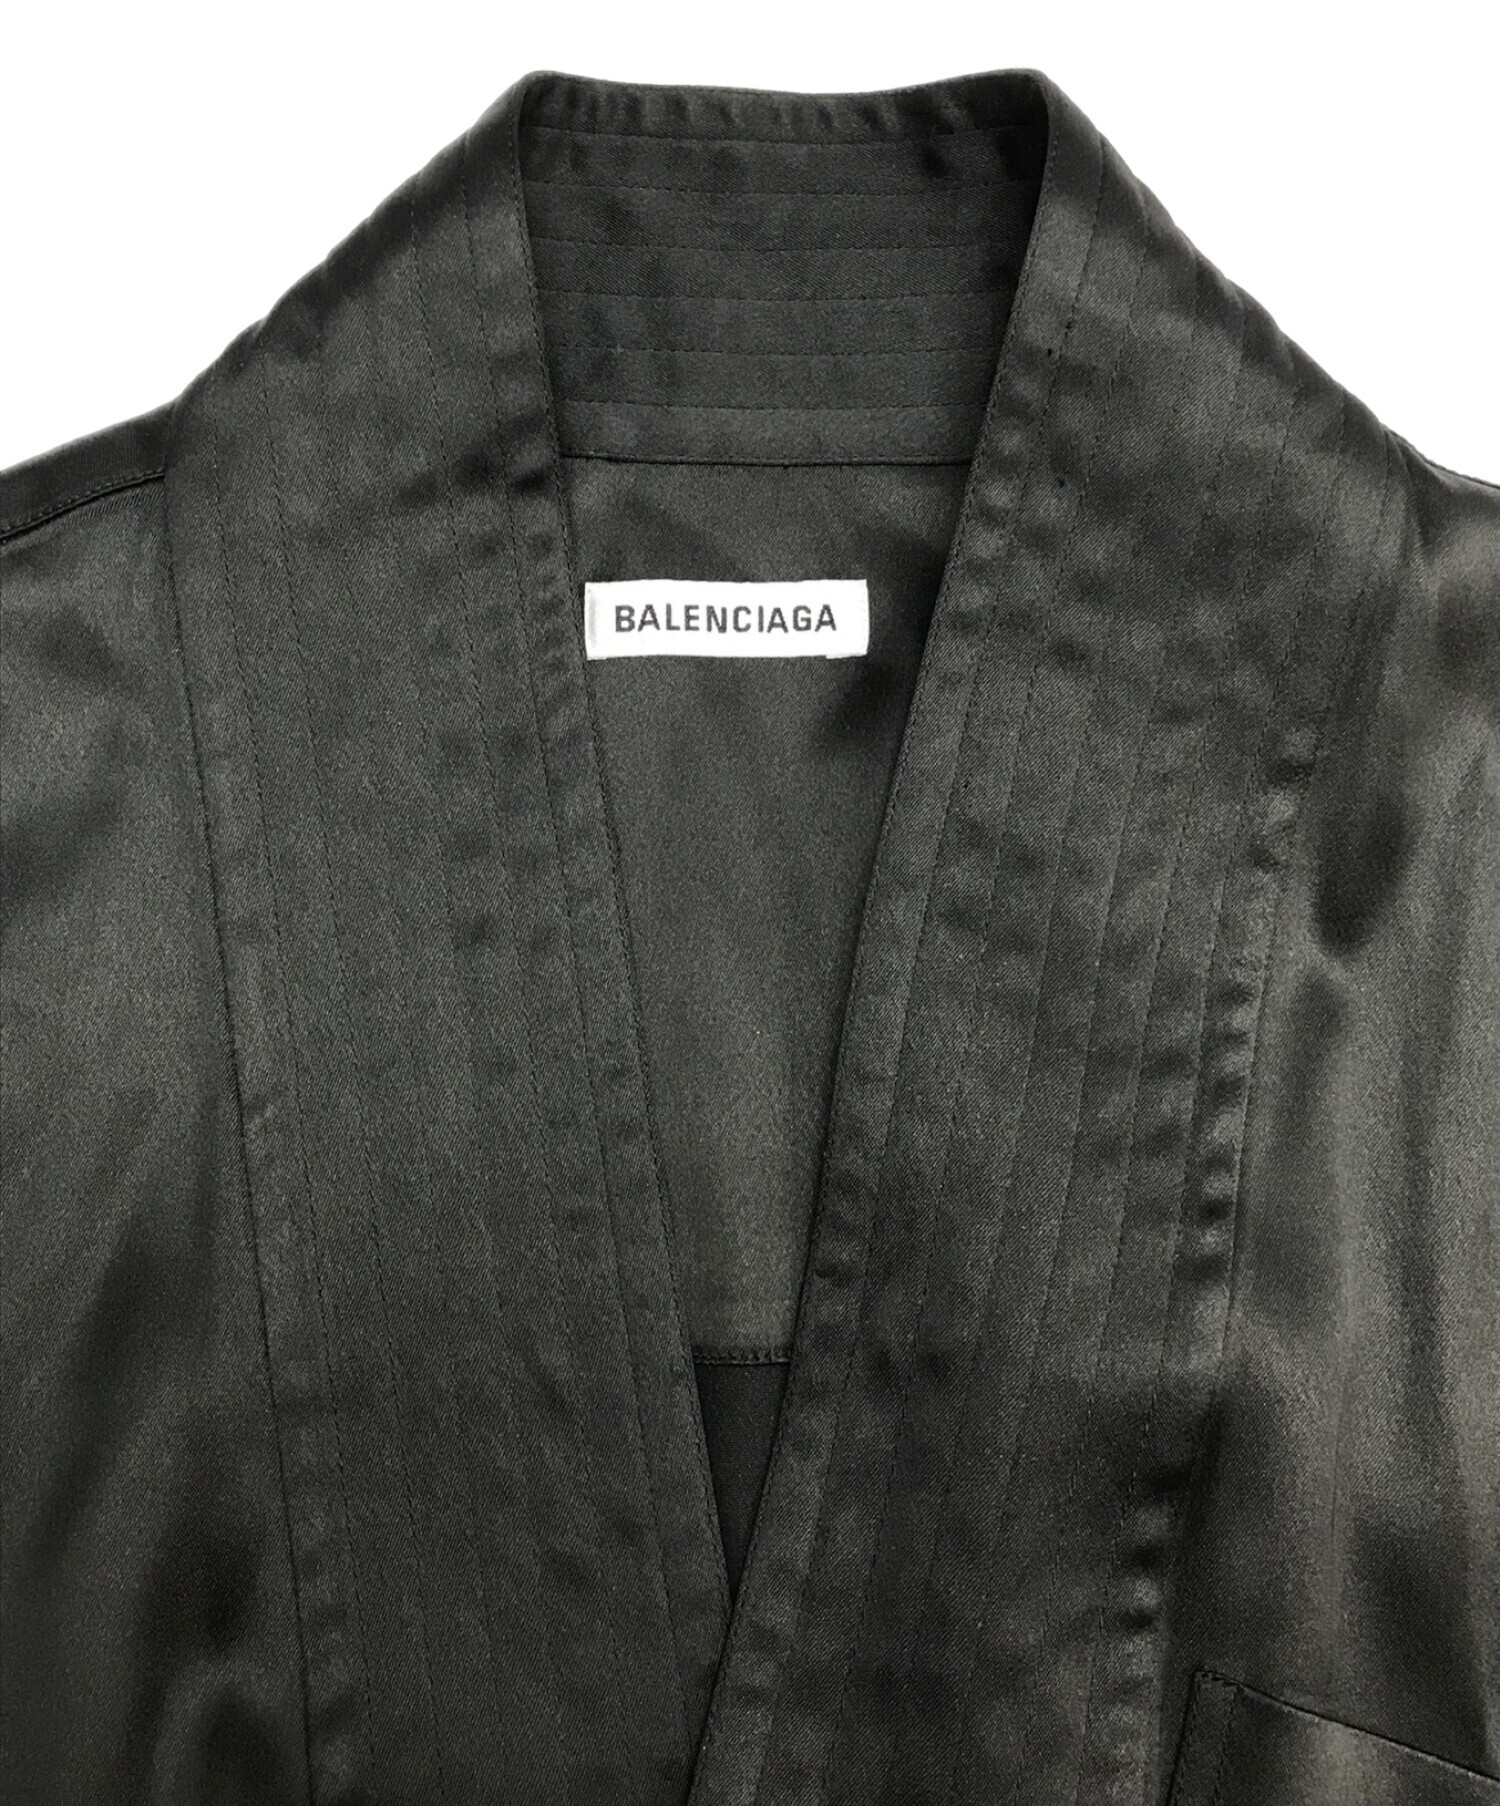 BALENCIAGA (バレンシアガ) ラップデザインシャツワンピース ブラック サイズ:36